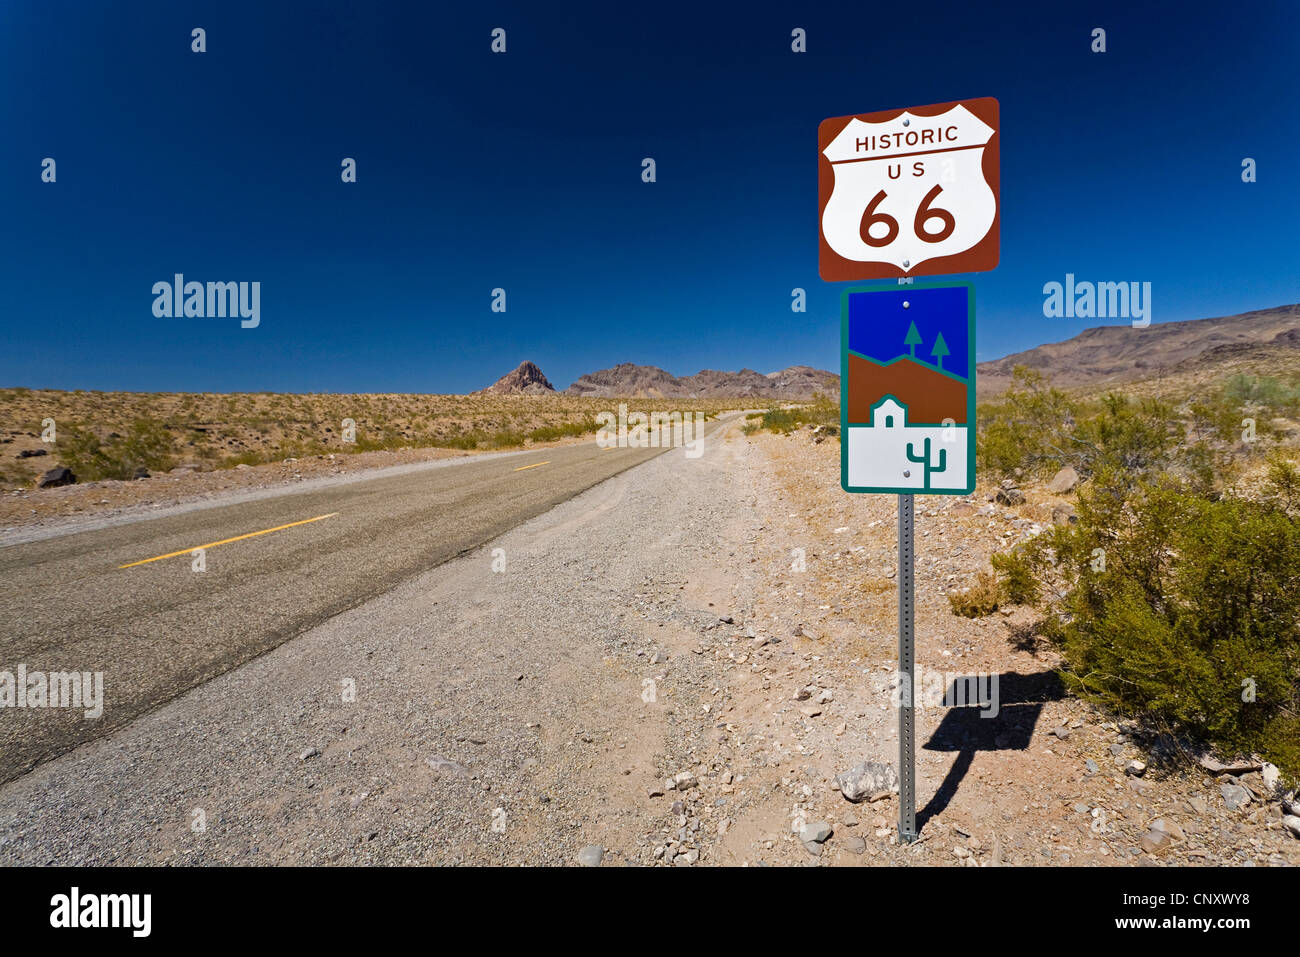 L'historique Route 66 et route, USA, Arizona Banque D'Images